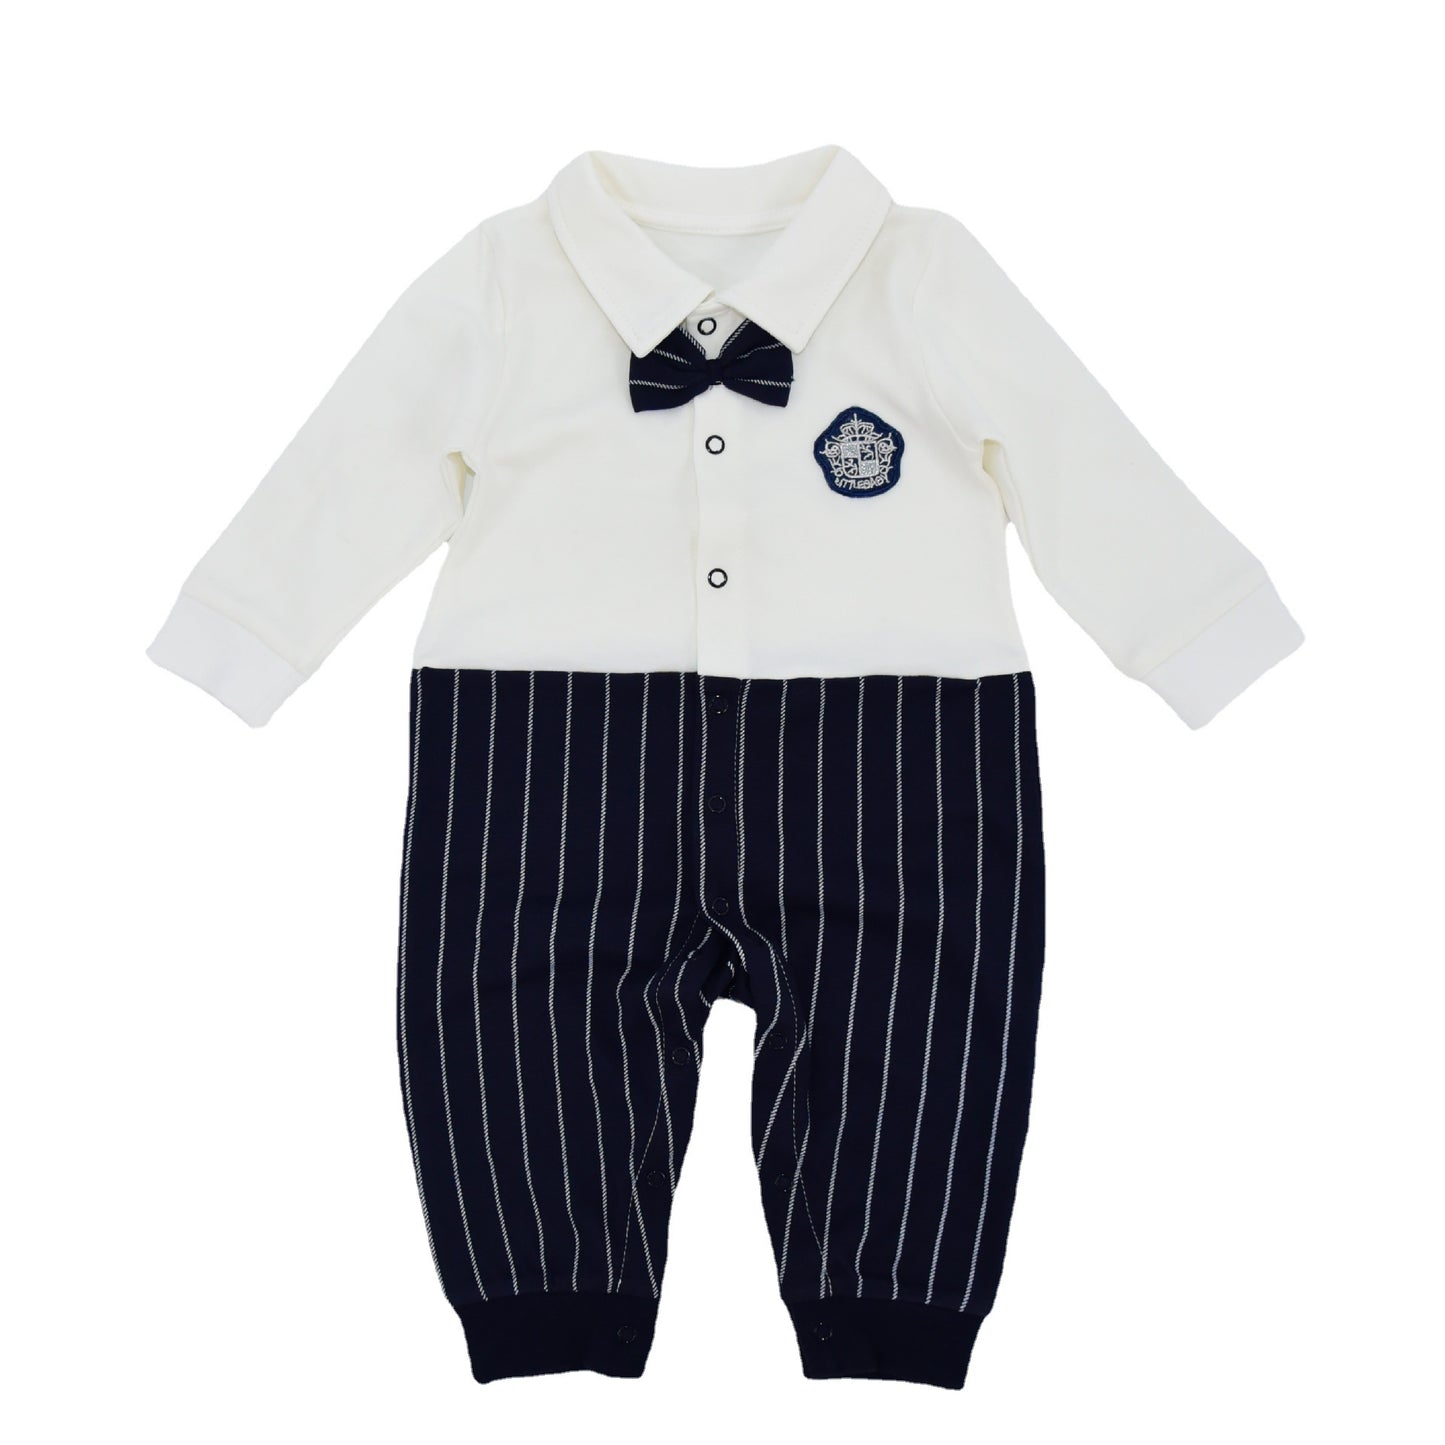 British Gentleman Boy Baby Crawling Suit Cotton Hakis